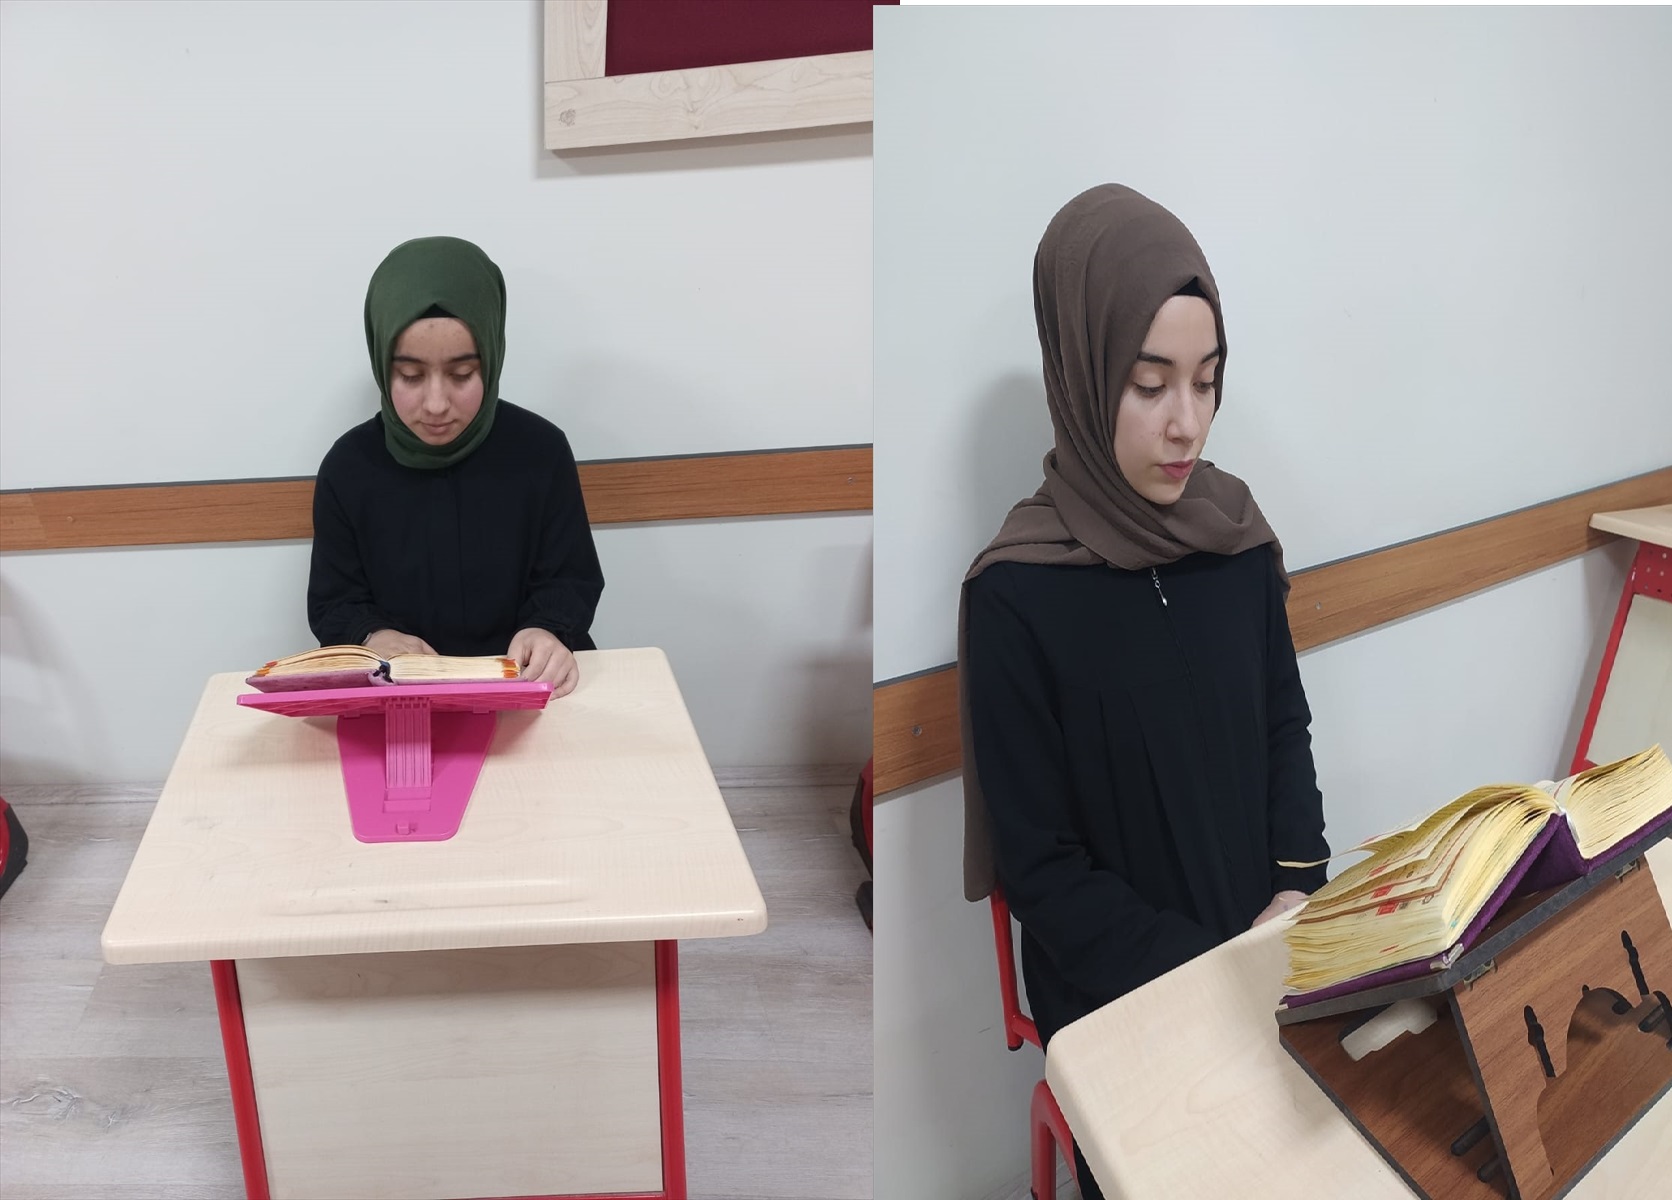 Konya'da iki genç kız 6 ayda Kur'an-ı Kerimi ezberledi